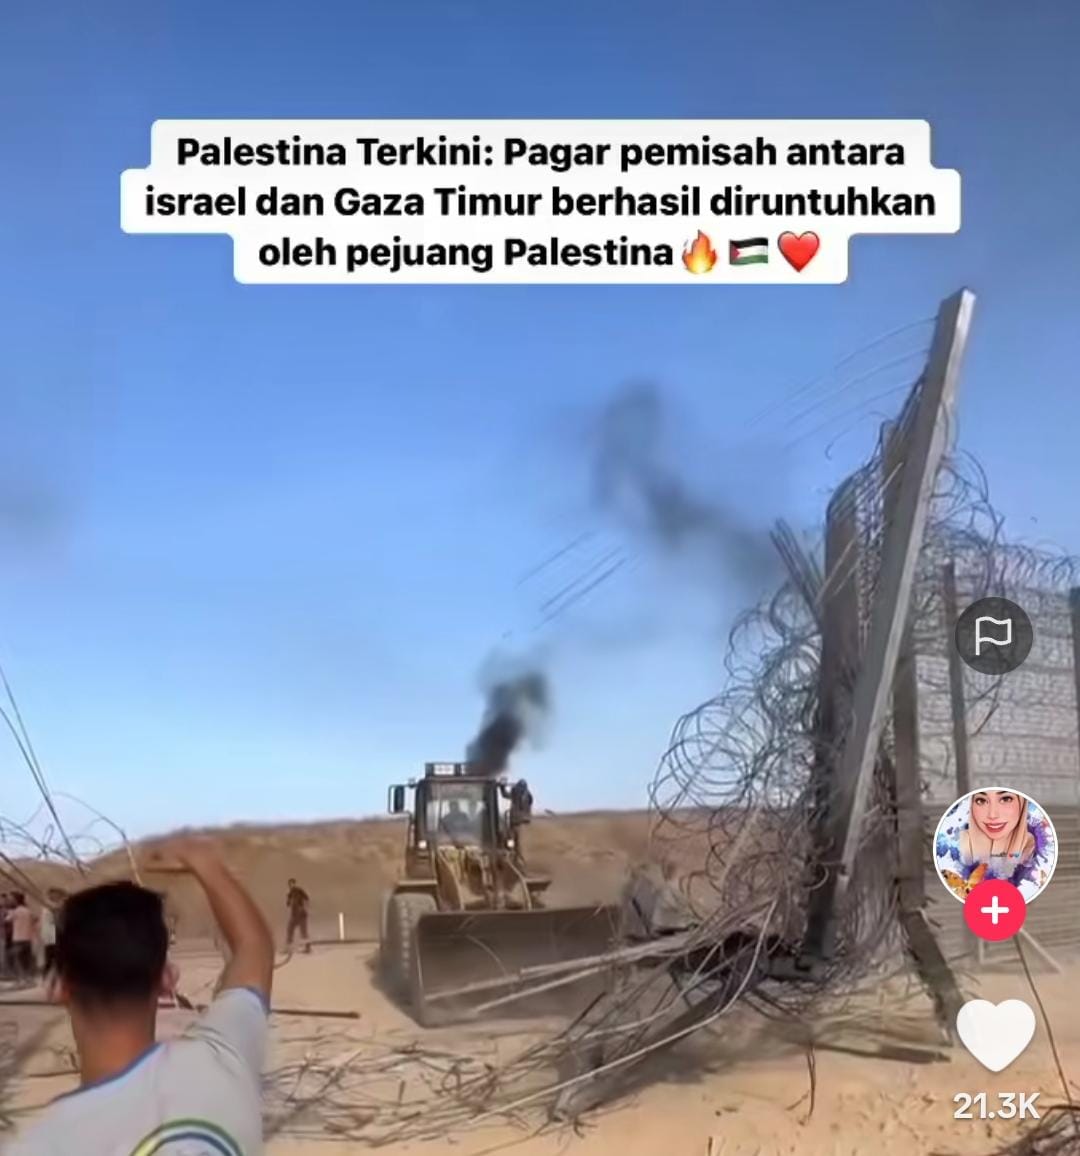 Palestina Terkini, 17 Tahun Menunggu, Akhirnya Pagar Pemisah Gaza Timur dan Israel Diruntuhkan Pejuang HAMAS